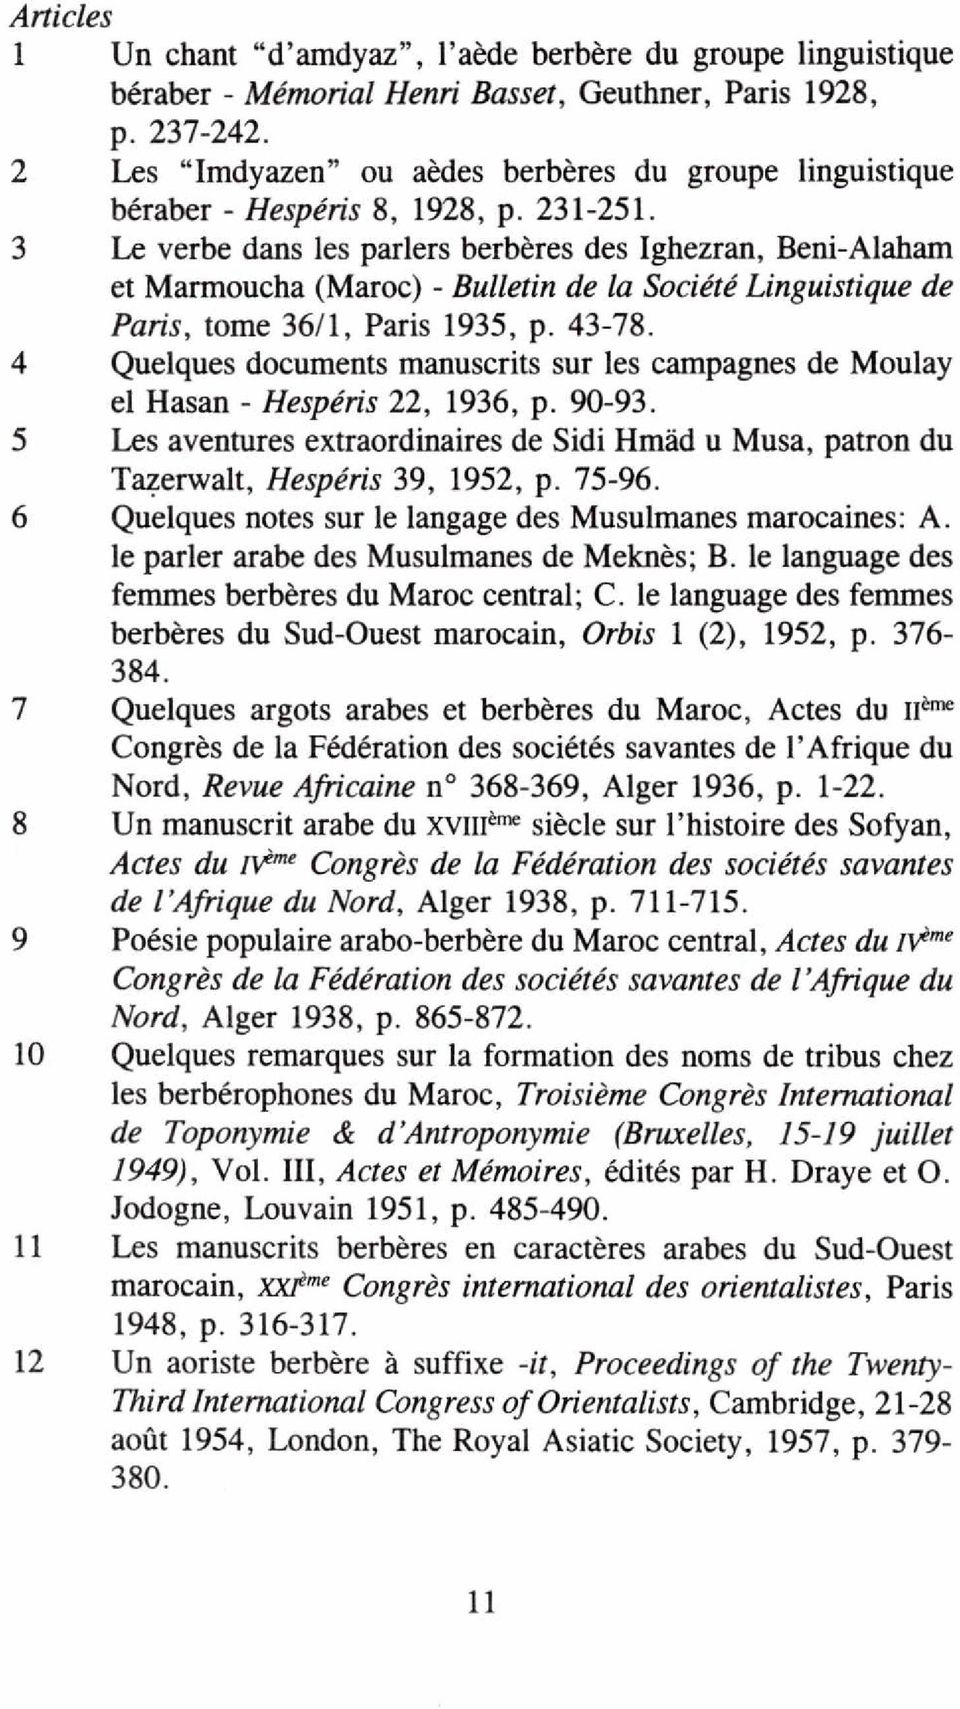 3 Le verbe dans les parlers berbères des Ighezran, Beni-Alaham et Marmoucha (Maroc) - Bulletin de la Société Linguistique de Paris, tome 36/1, Paris 1935, p. 43-78.